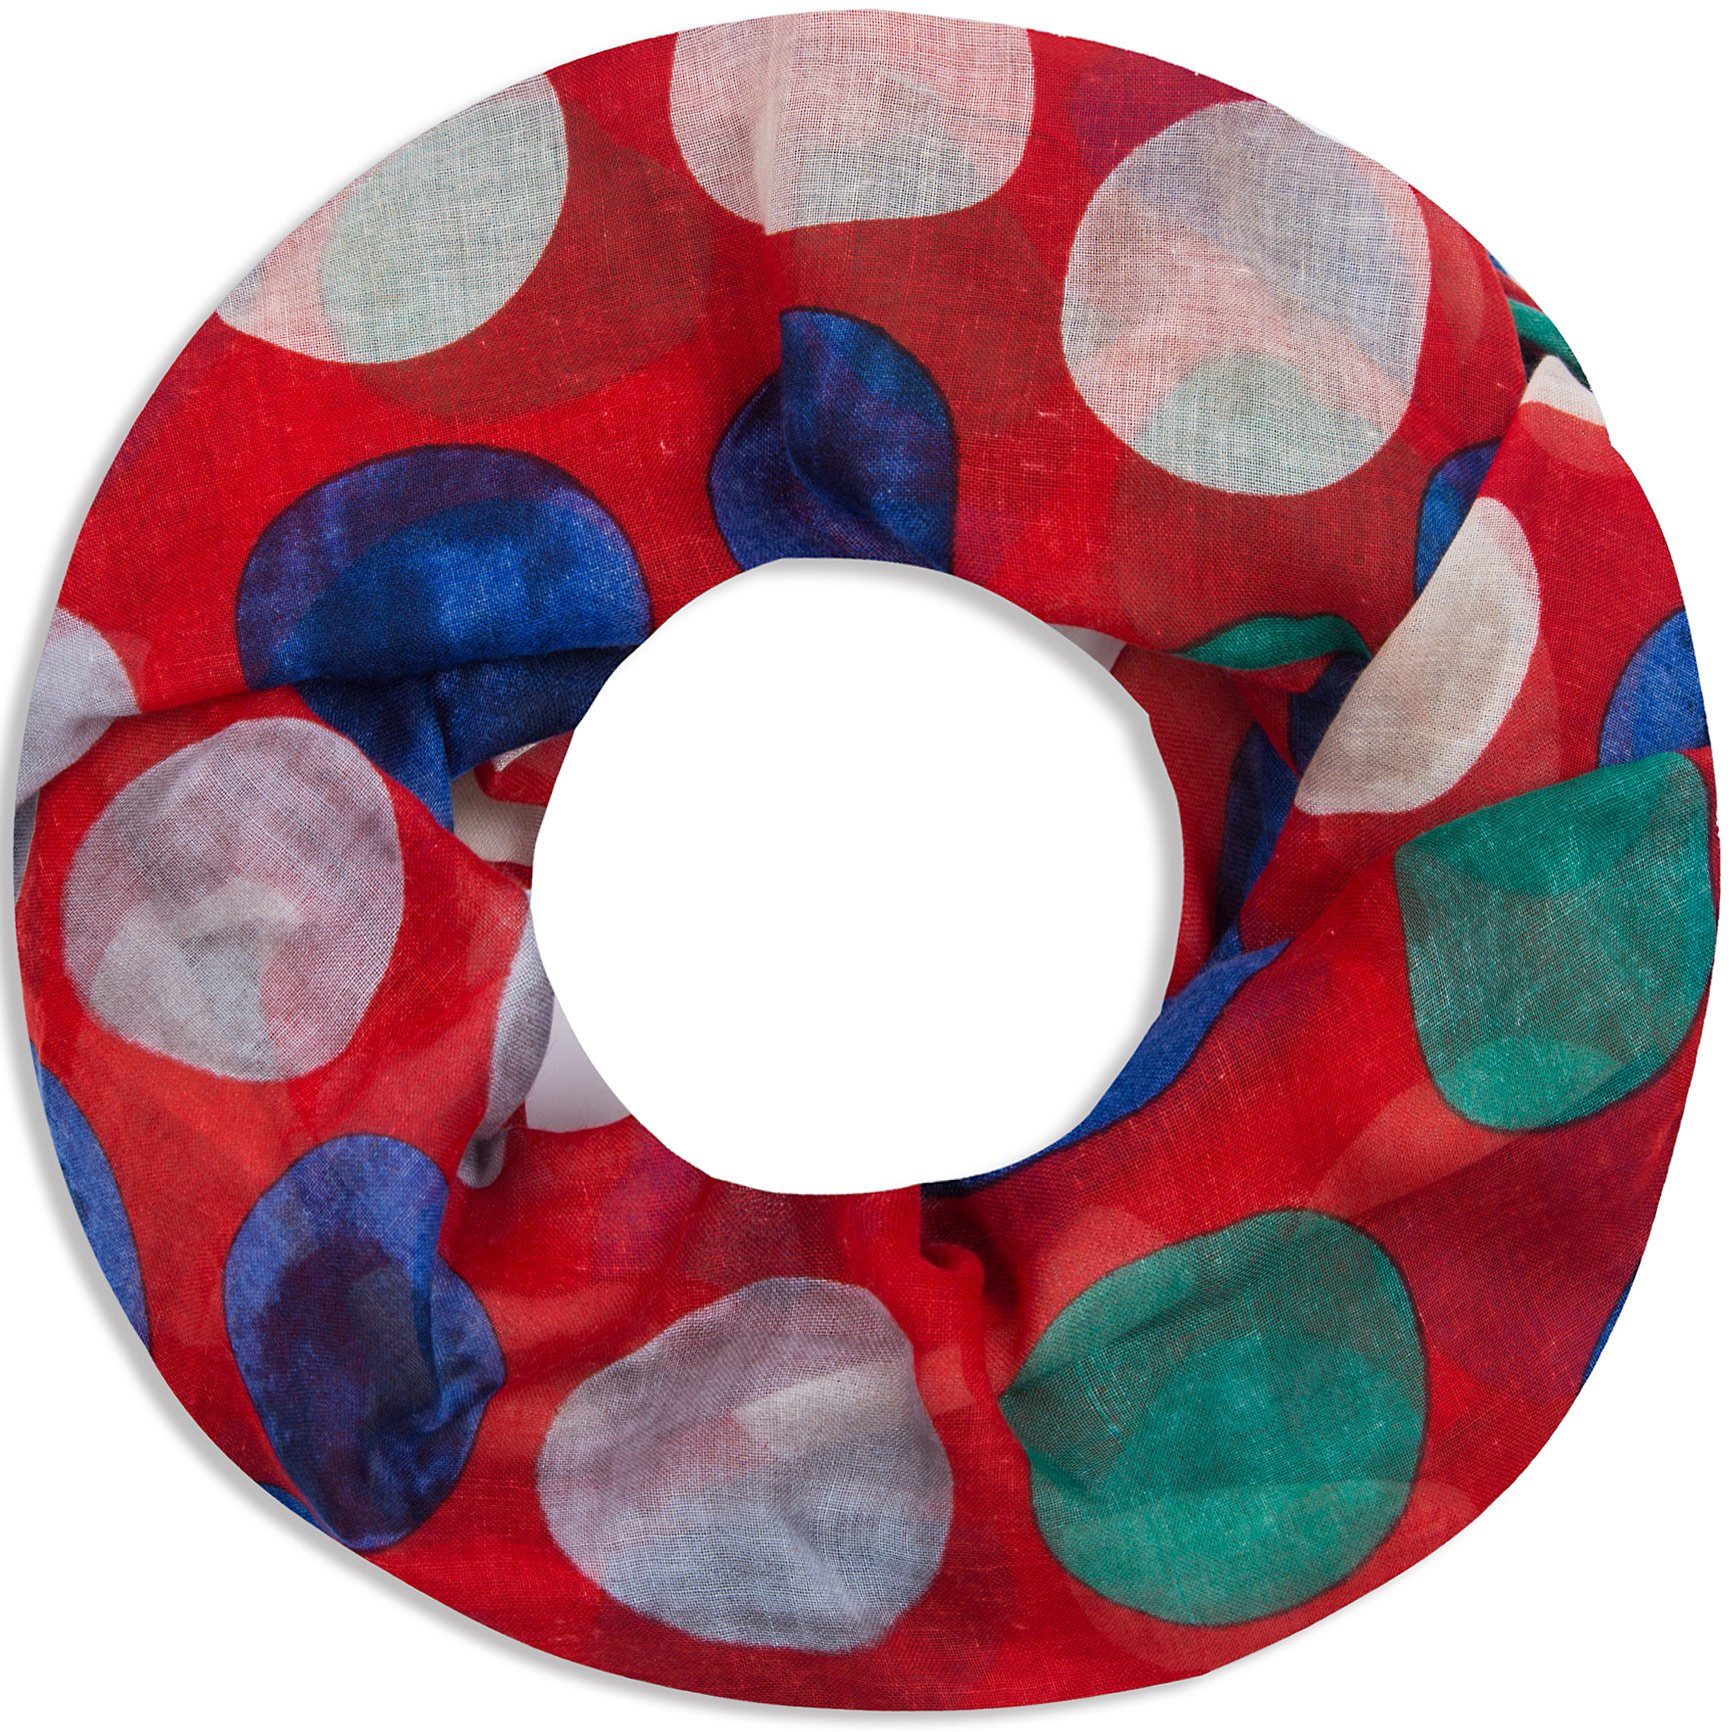 Faera Loop, Damen Schal gepunkteter weicher und leichter Loopschal Rundschal mit großen Punkten rot